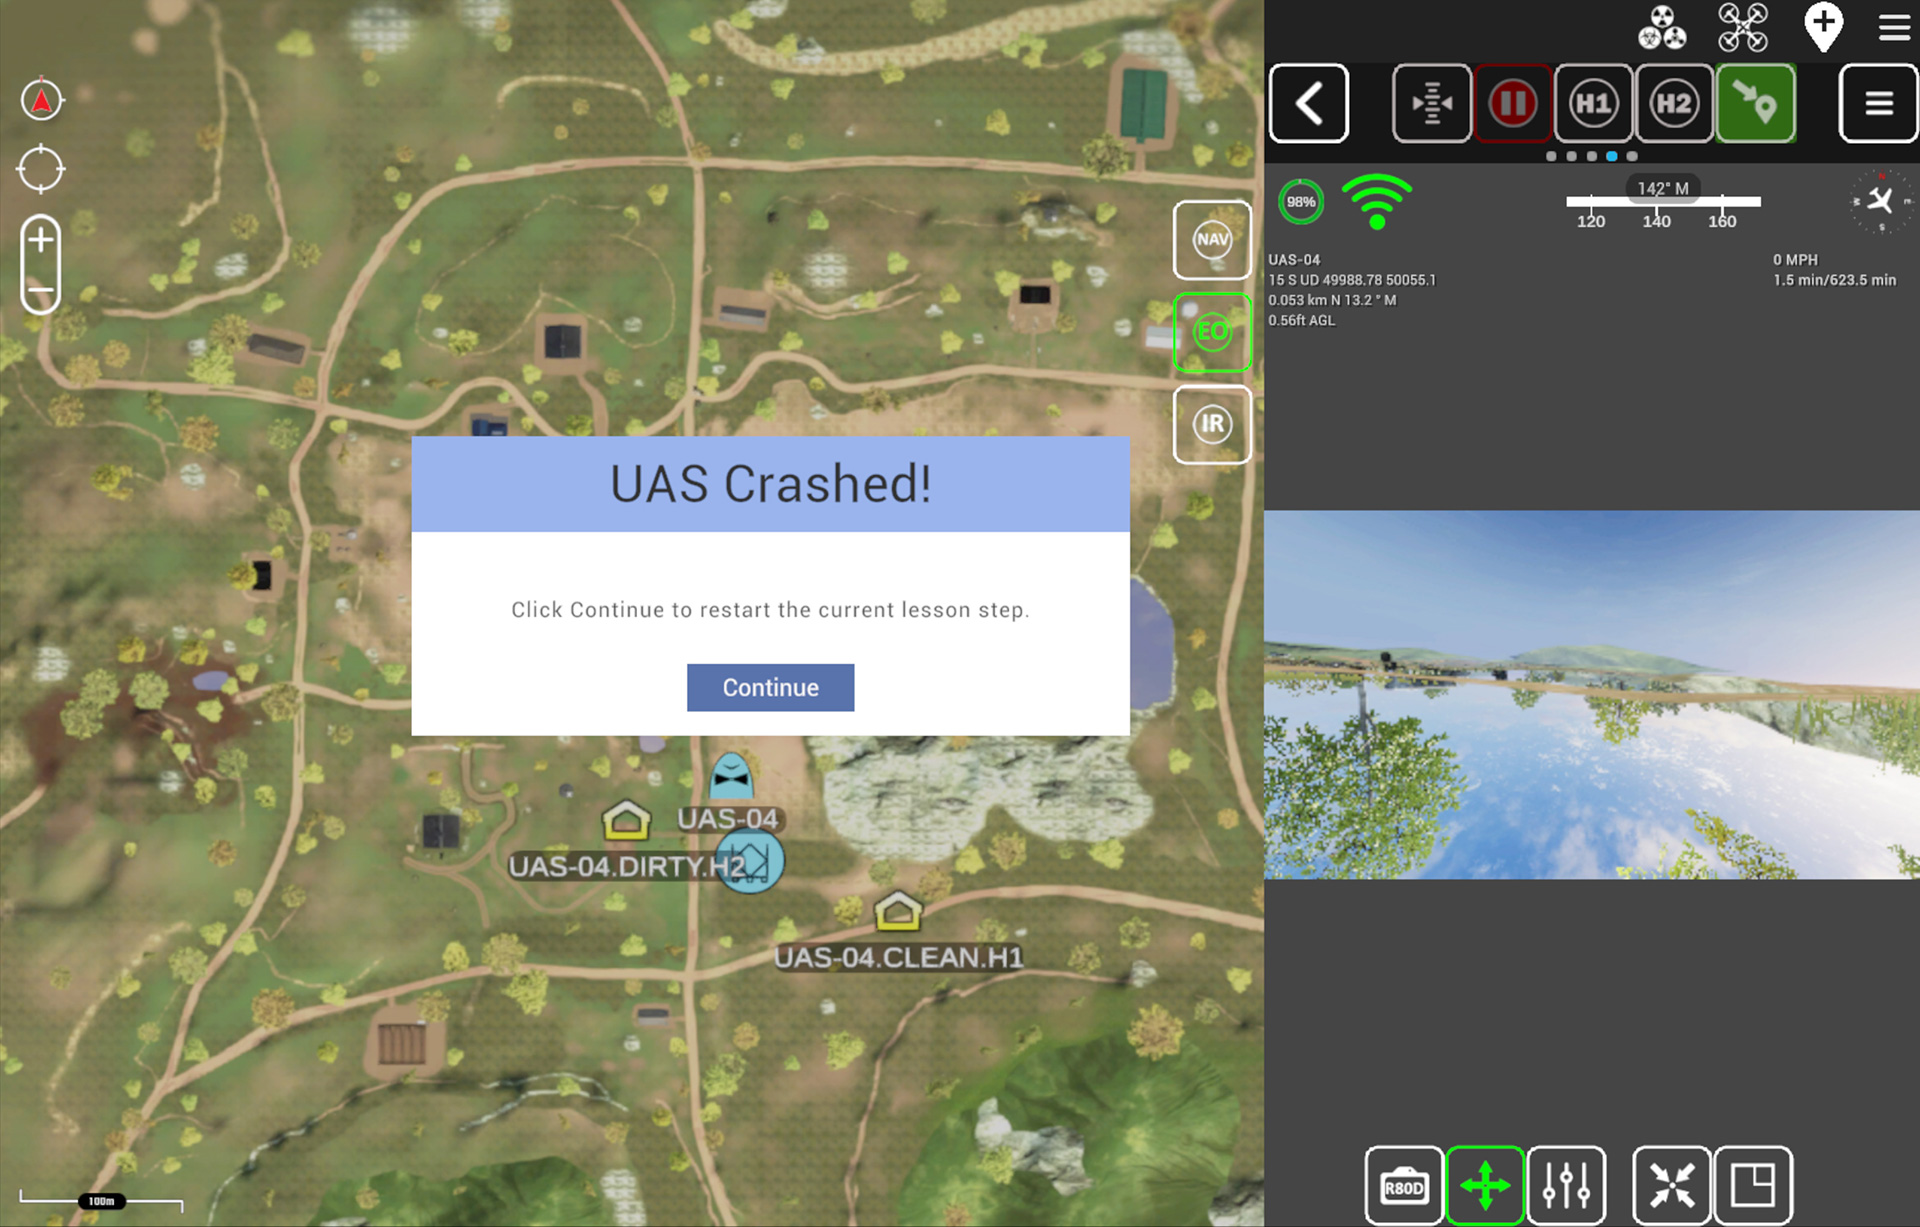 Simulation-Based Training for UAS Crash